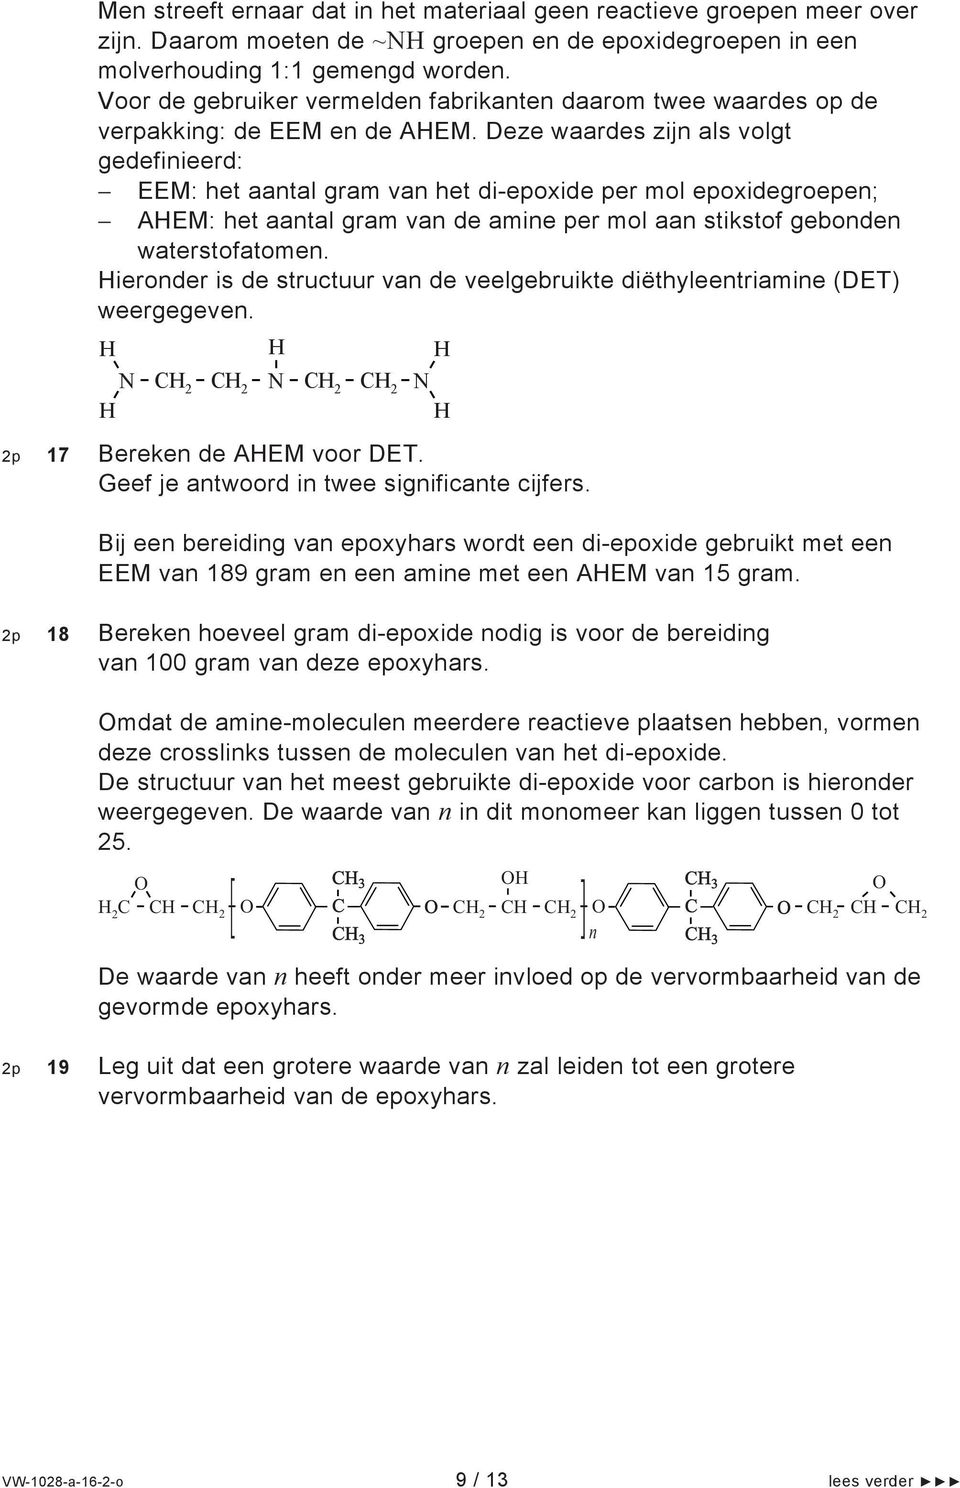 Deze waardes zijn als volgt gedefinieerd: EEM: het aantal gram van het di-epoxide per mol epoxidegroepen; AEM: het aantal gram van de amine per mol aan stikstof gebonden waterstofatomen.